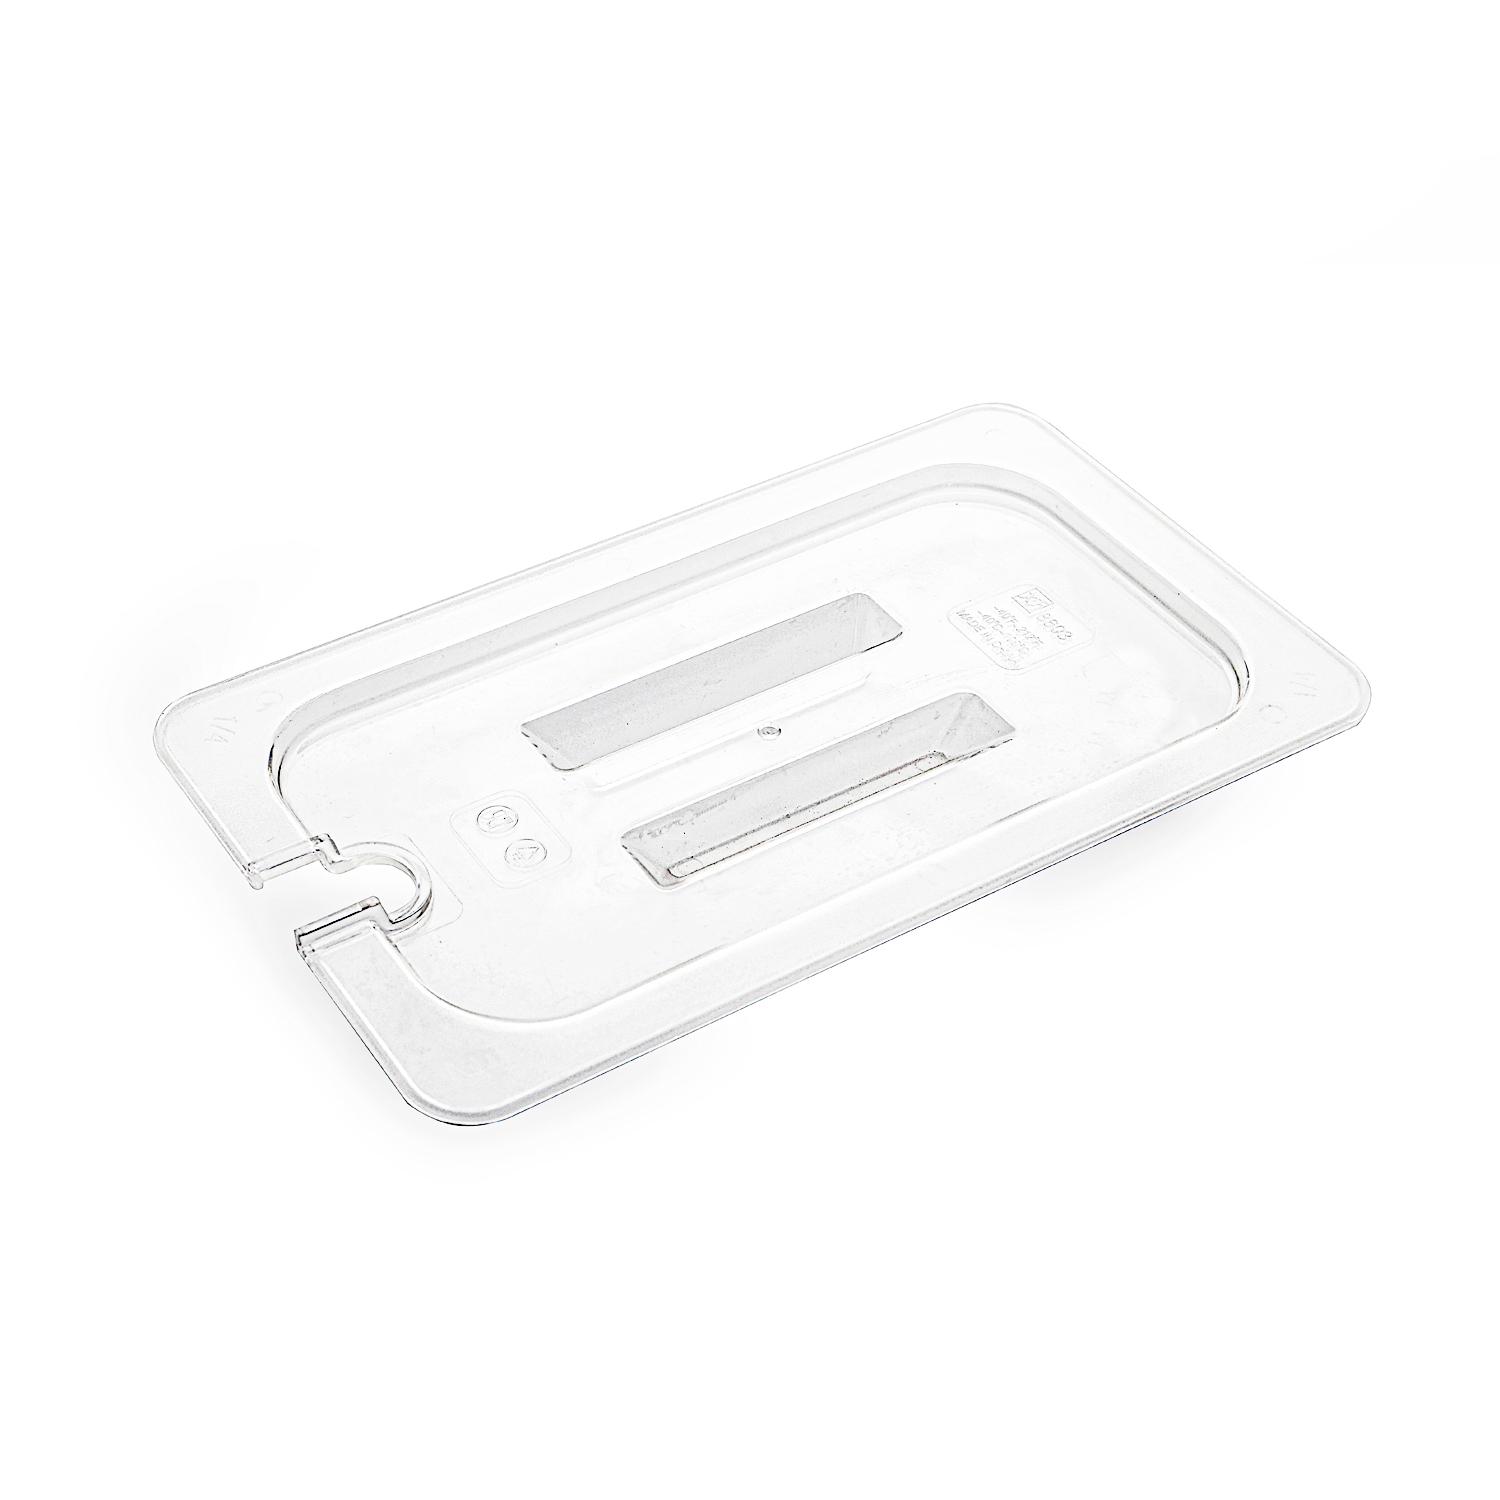 غطاء وعاء 2.5 سم بلاستيك شفاف PC Plastic Transparent Quarter Size Food Pan Cover 2.5 cm